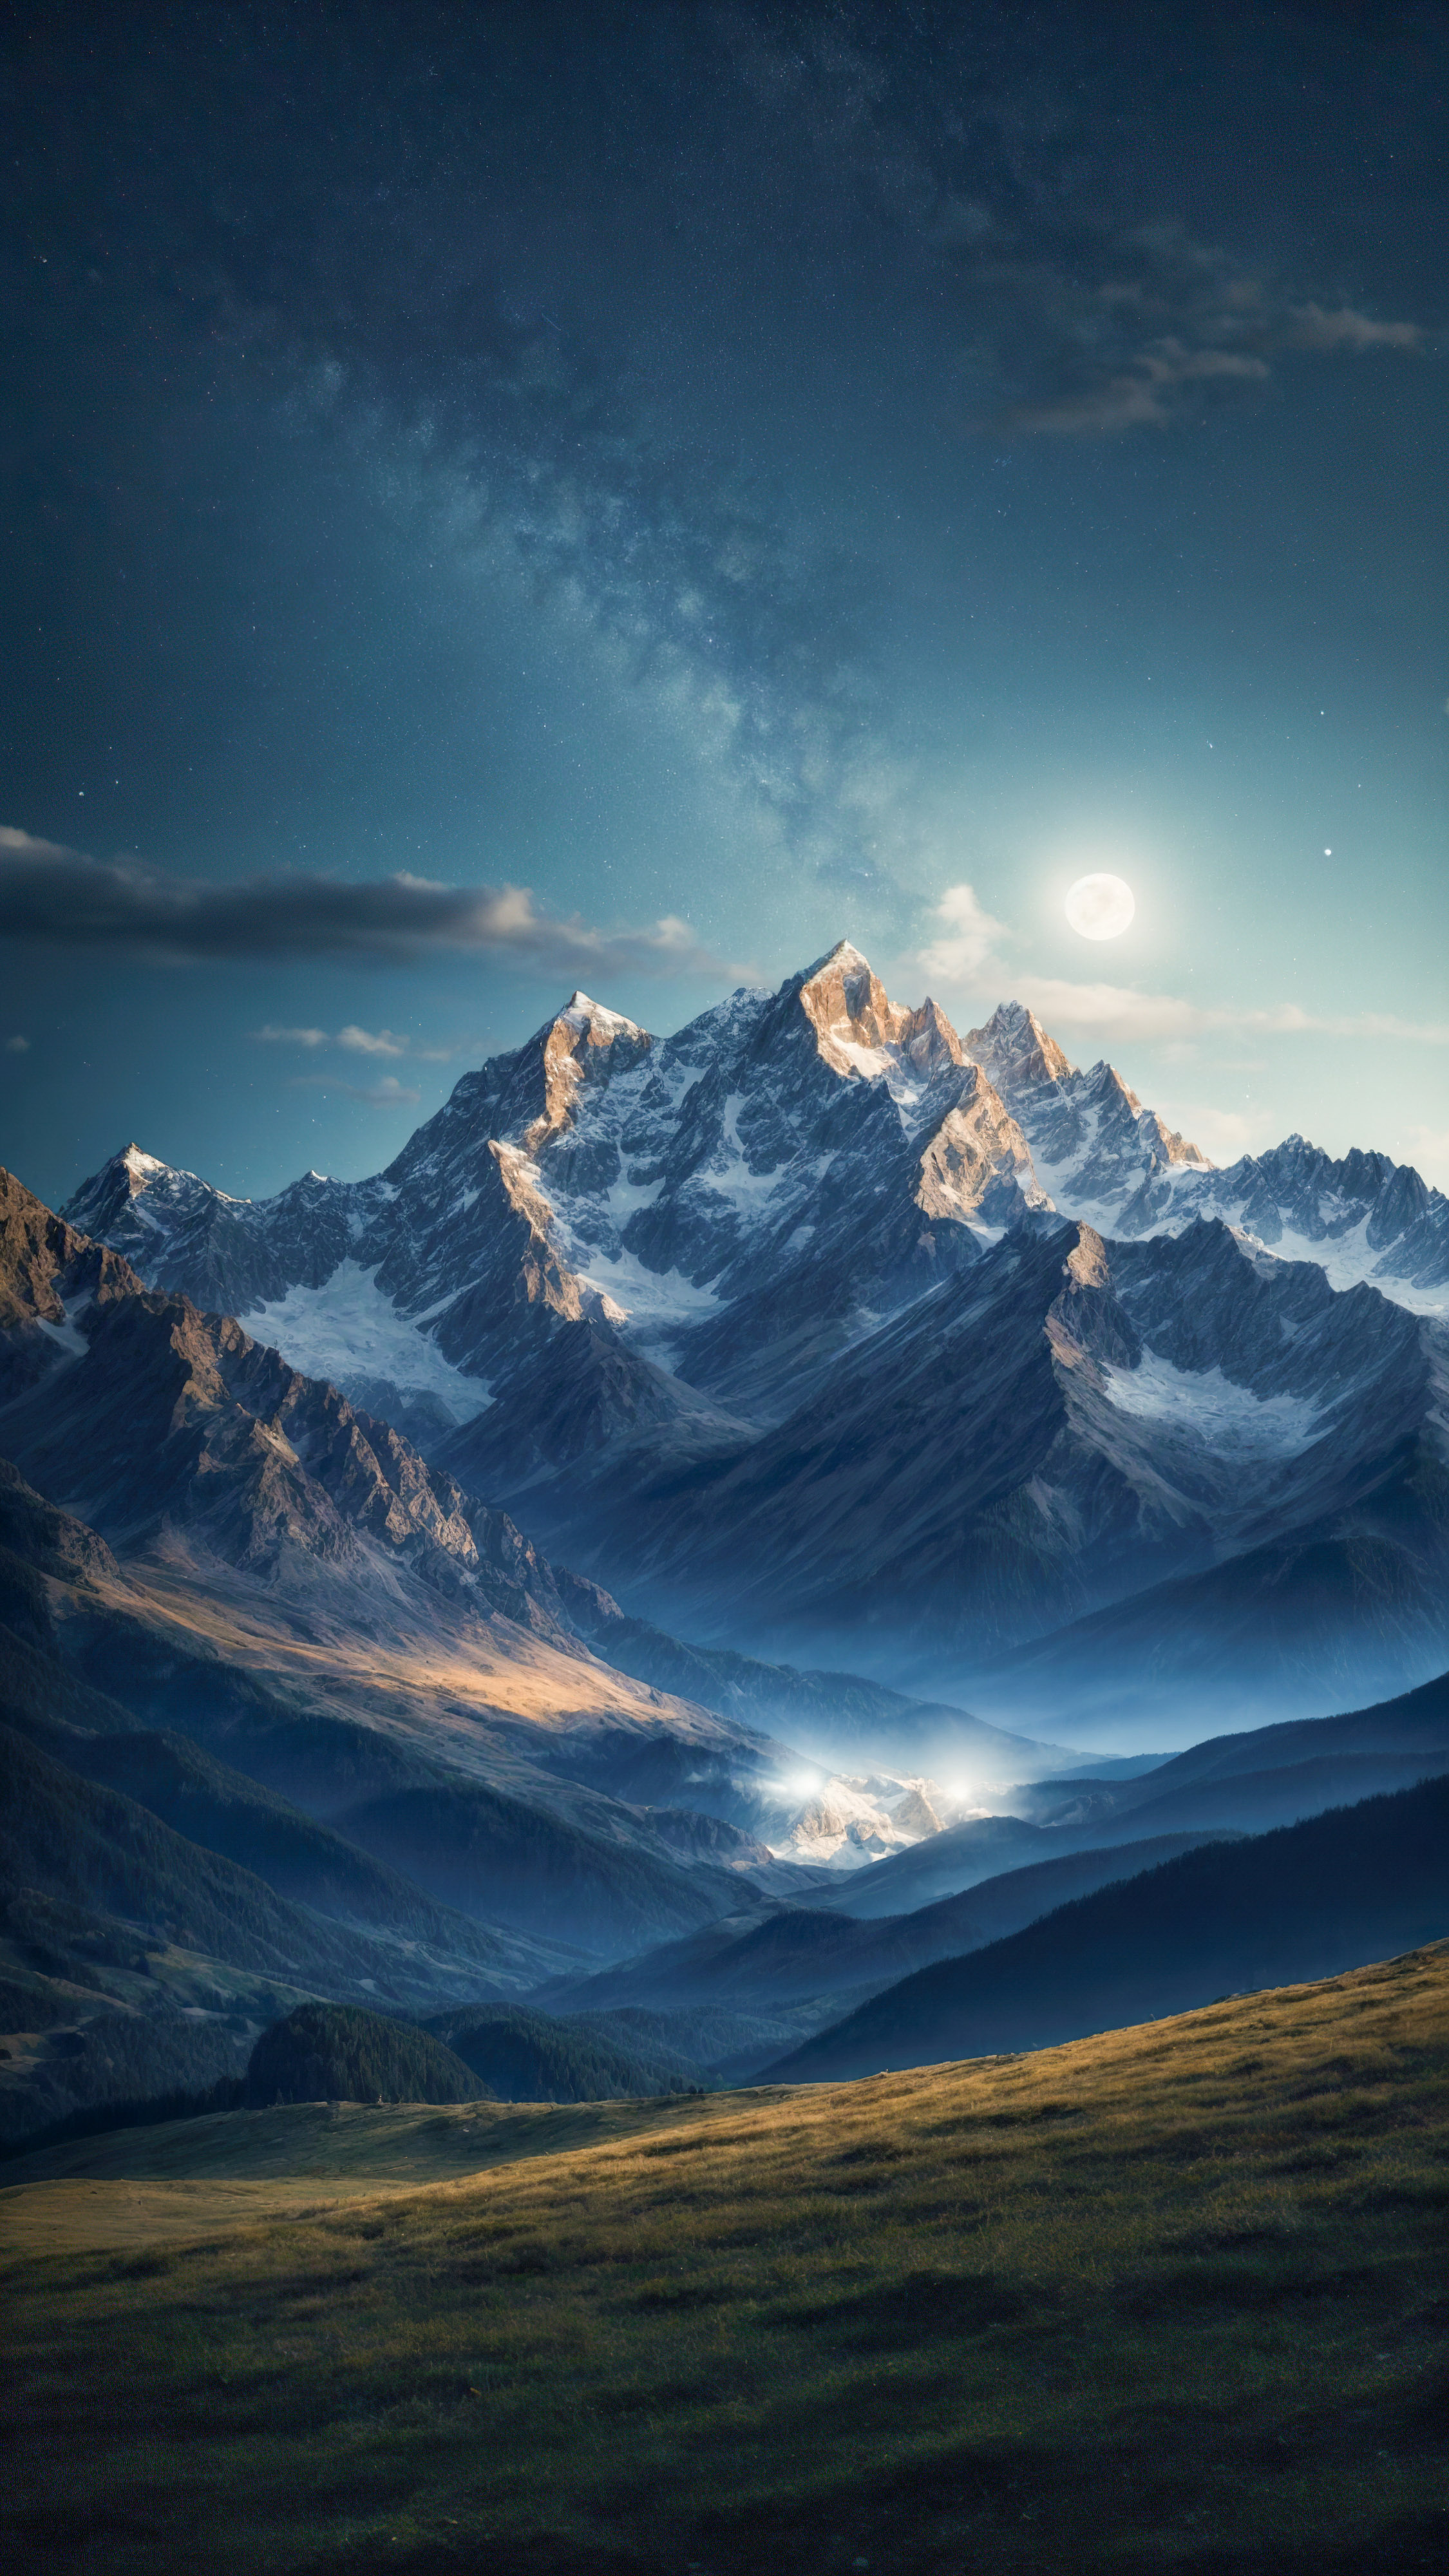 Capturez l'essence d'un ciel étoilé la nuit sur les montagnes, avec une lune brillante et une étoile filante, avec ces fonds d'écran uniques pour iPhone.